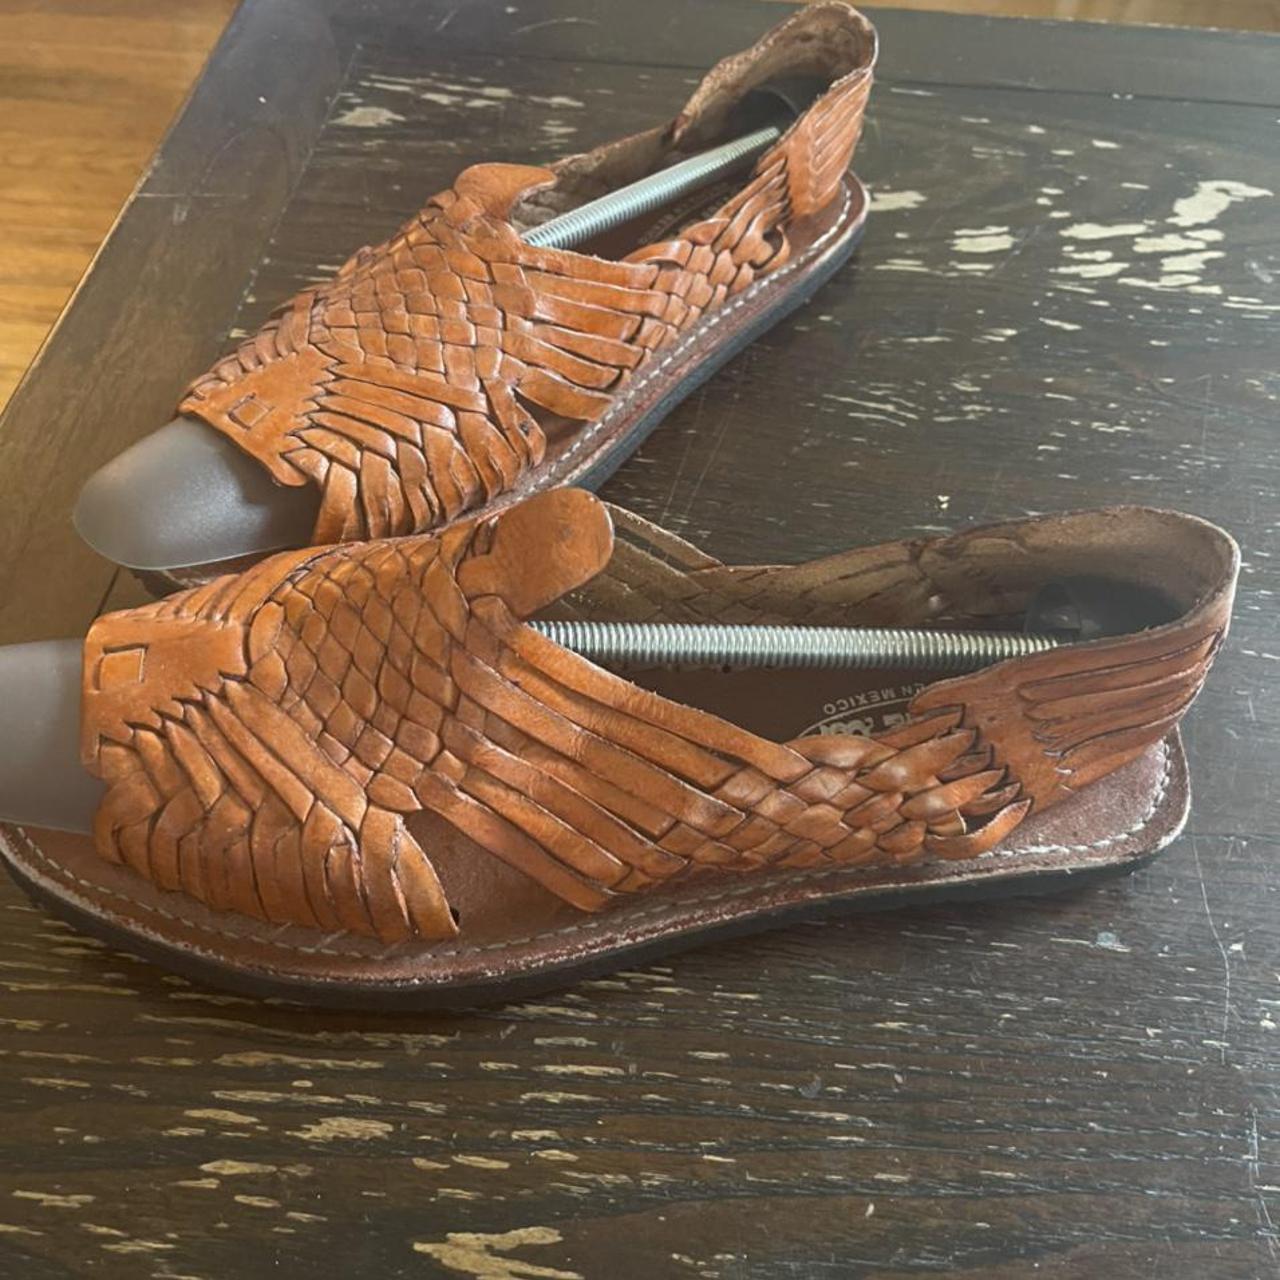 Product Image 2 - Galvez leather sun shoes sandals.